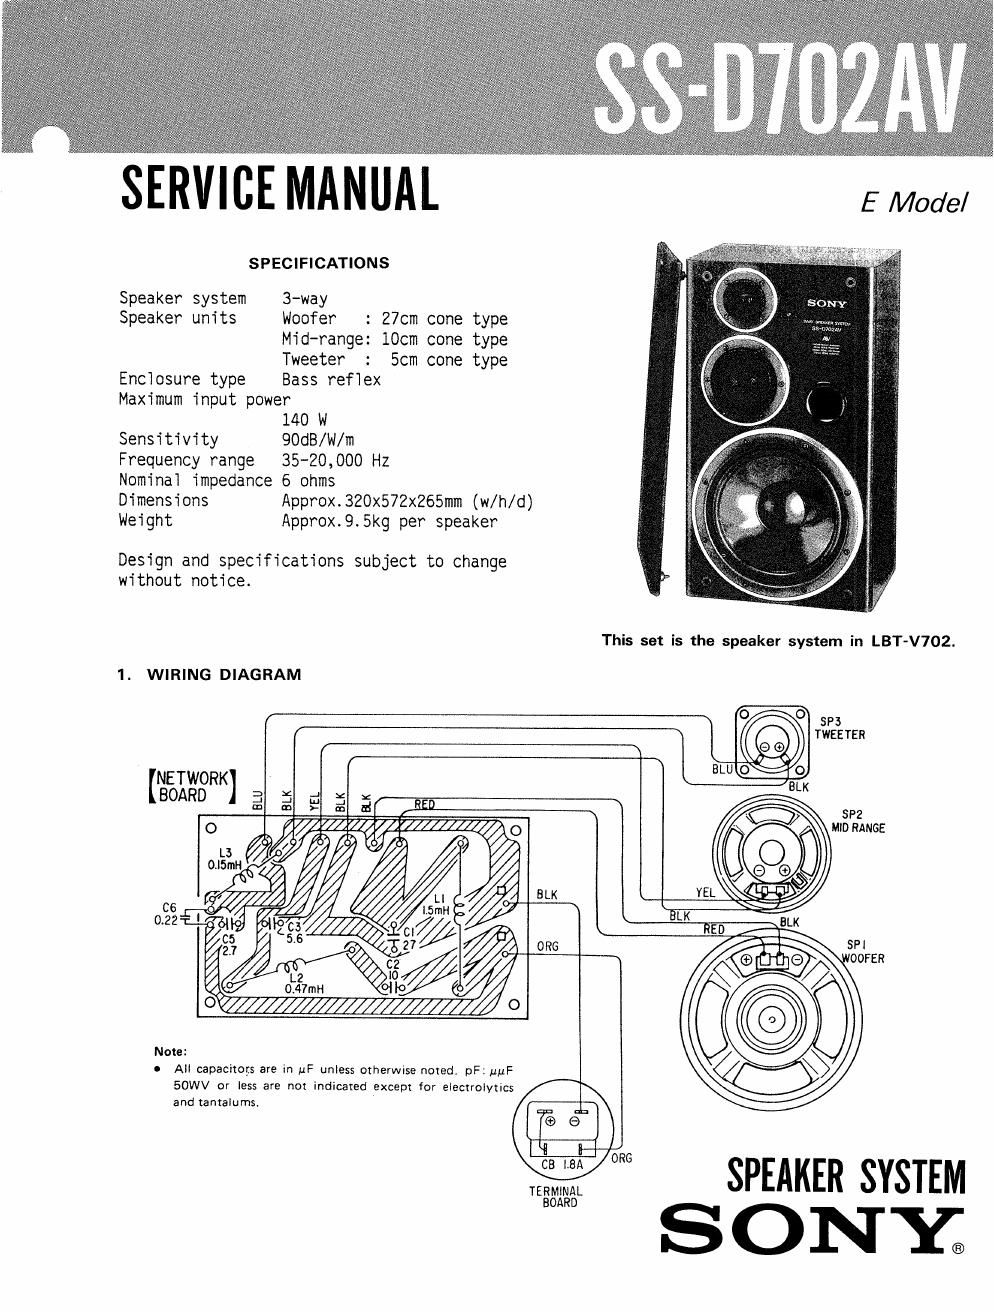 sony ss d 702 av service manual